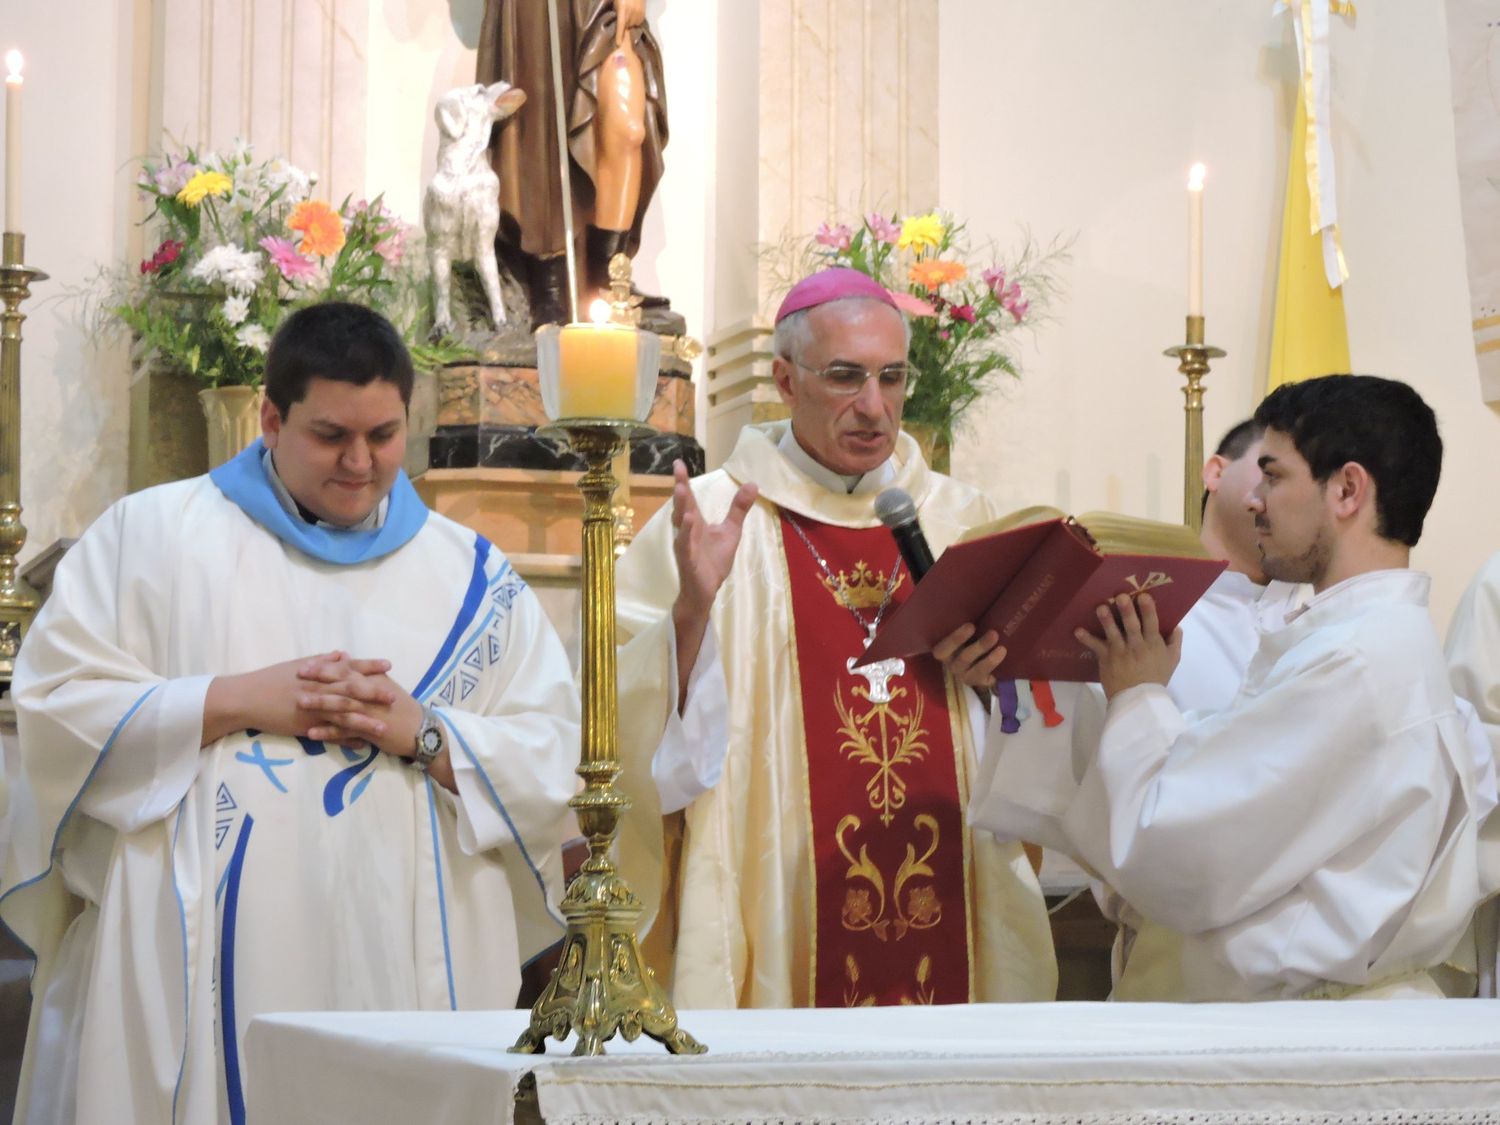 Para la Justicia, el obispo Santiago y el cura de San Roque ejercieron “violencia psicológica” contra denunciantes de abuso